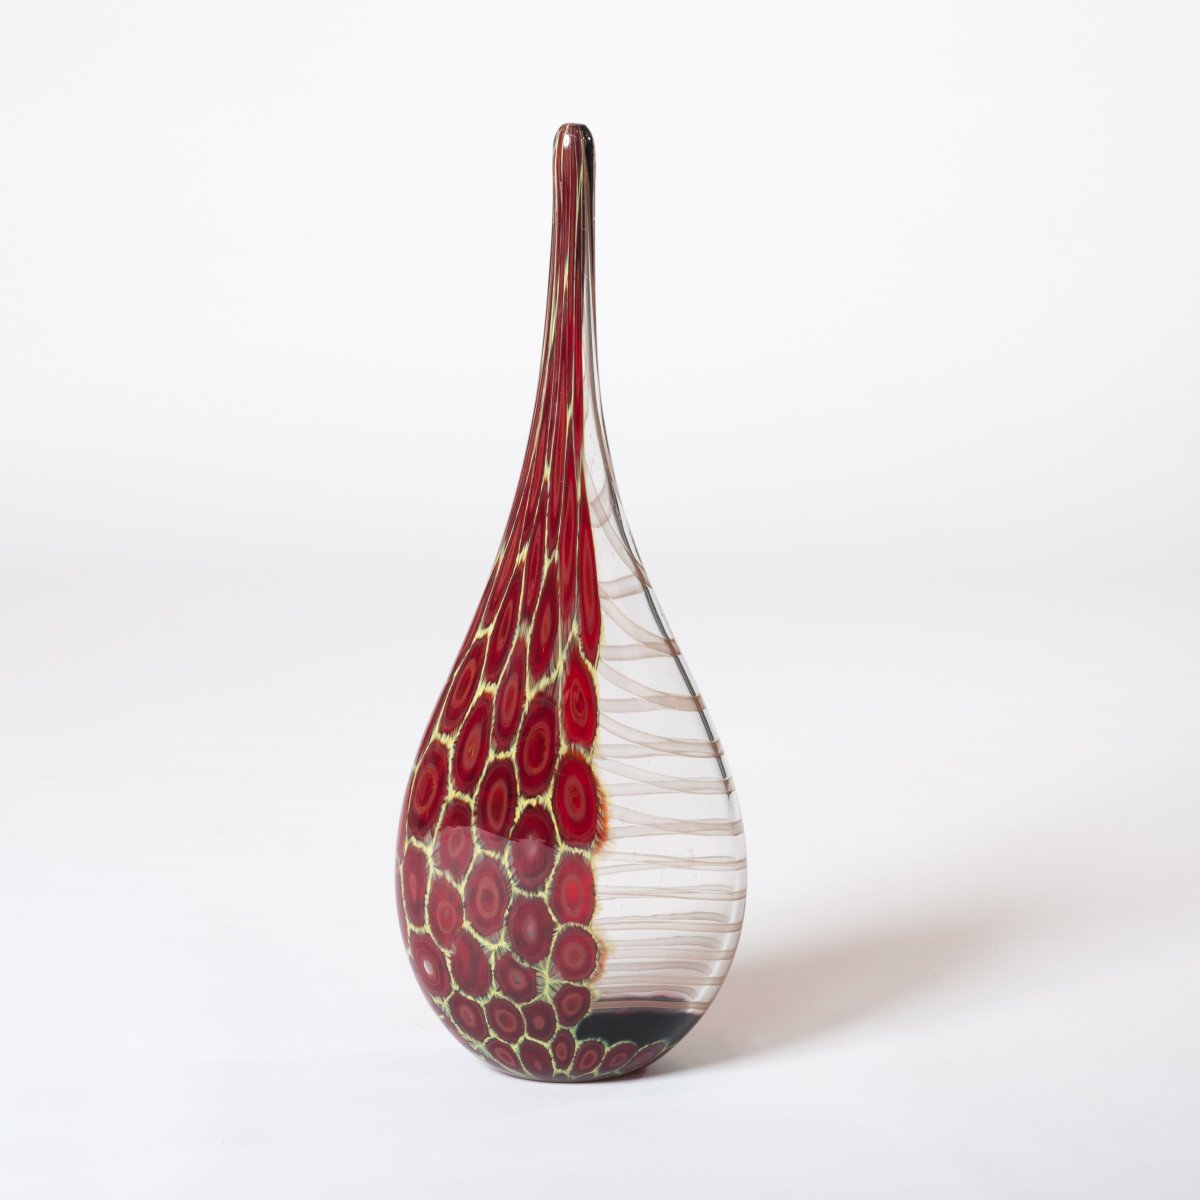 Vase en verre de Murano élégant et haut en forme de bouteille en verre transparent, rouge foncé et jaune